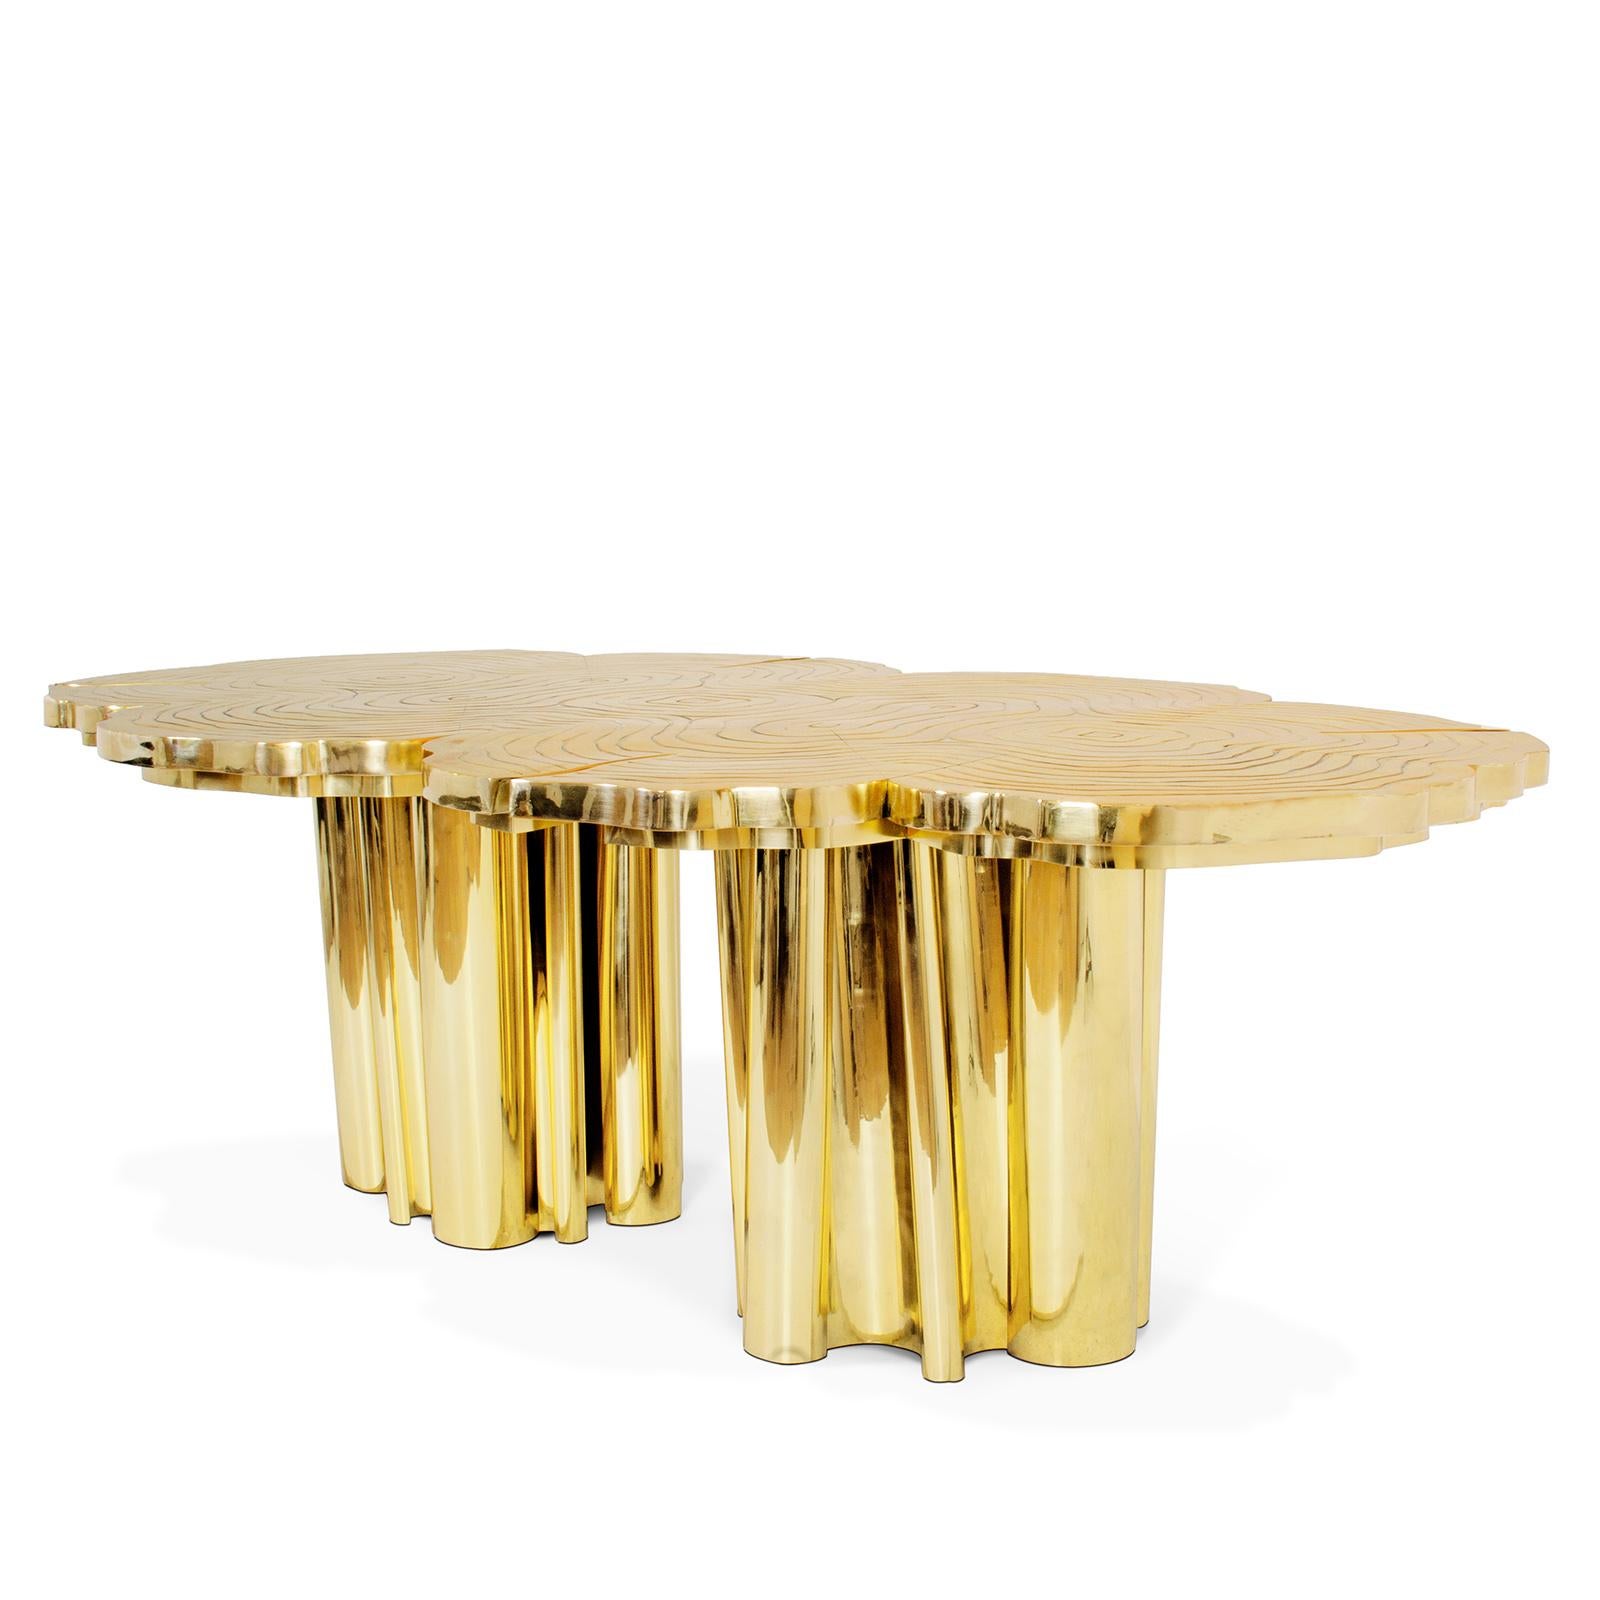 Table Tresor Esstisch oder Konferenztisch mit Holzstruktur
bedeckt mit poliertem, massivem Messing, für acht bis zehn Sitzplätze. Jedes Stück ist einzigartig.